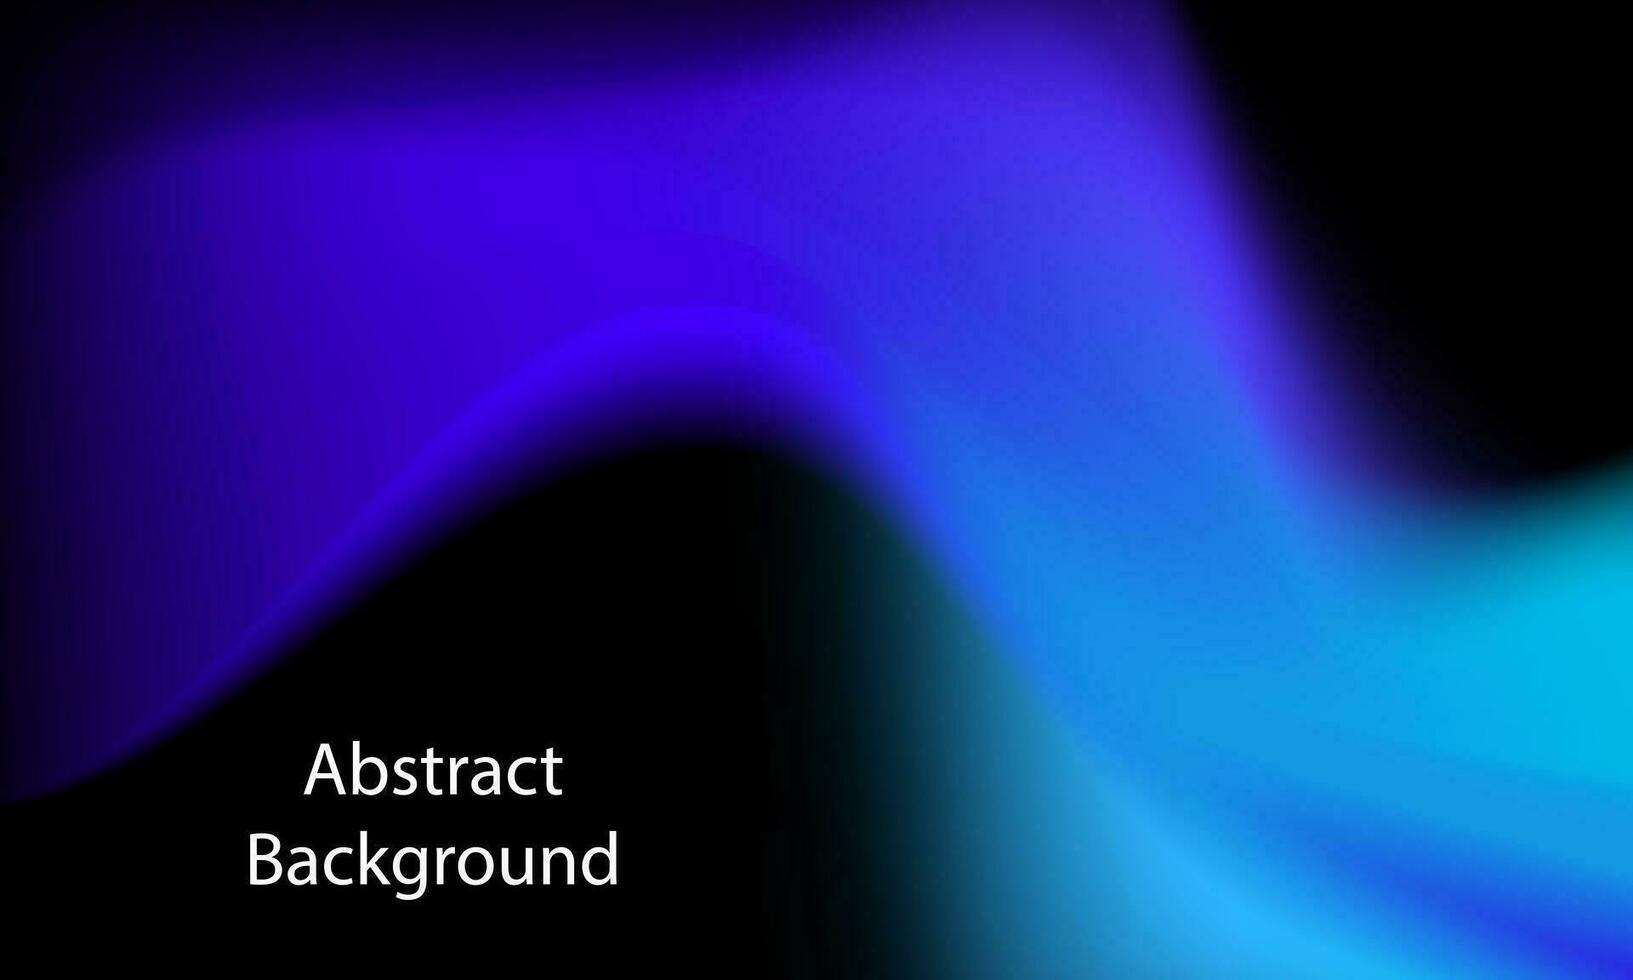 abstrakt bakgrund med blå och lila vågor. vektor illustration för din design.